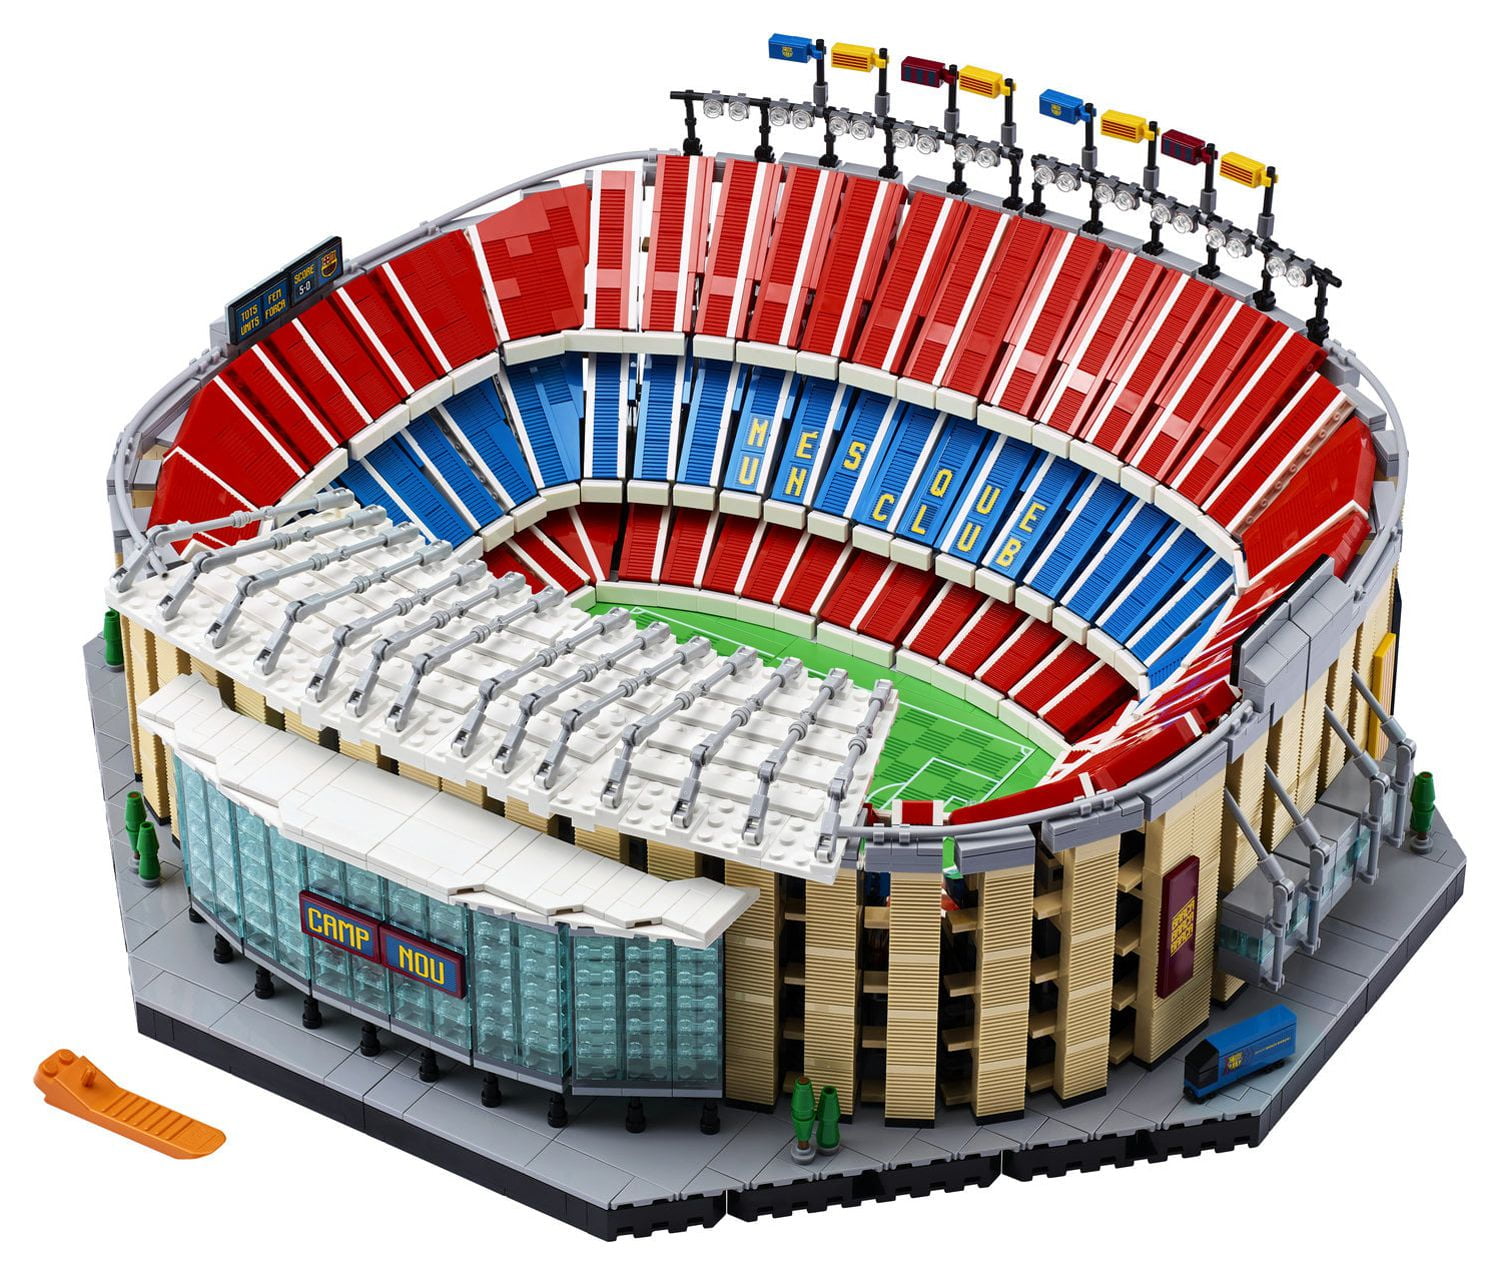 LEGO IDEAS - The Tottenham Hotspur Stadium